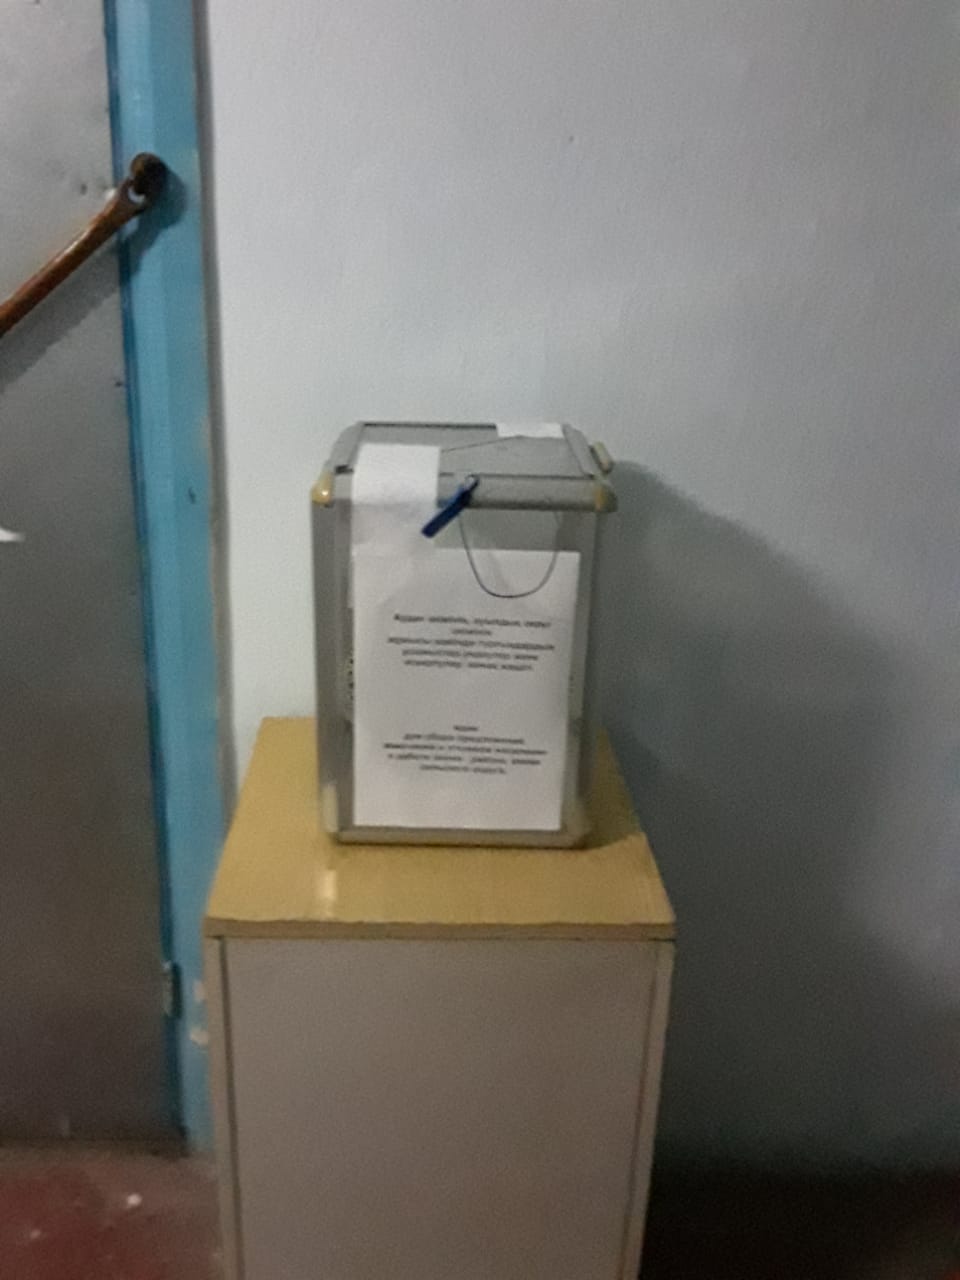 Ящик для предложении изамечании на отчетные встречи Кырымбетского скльского округа